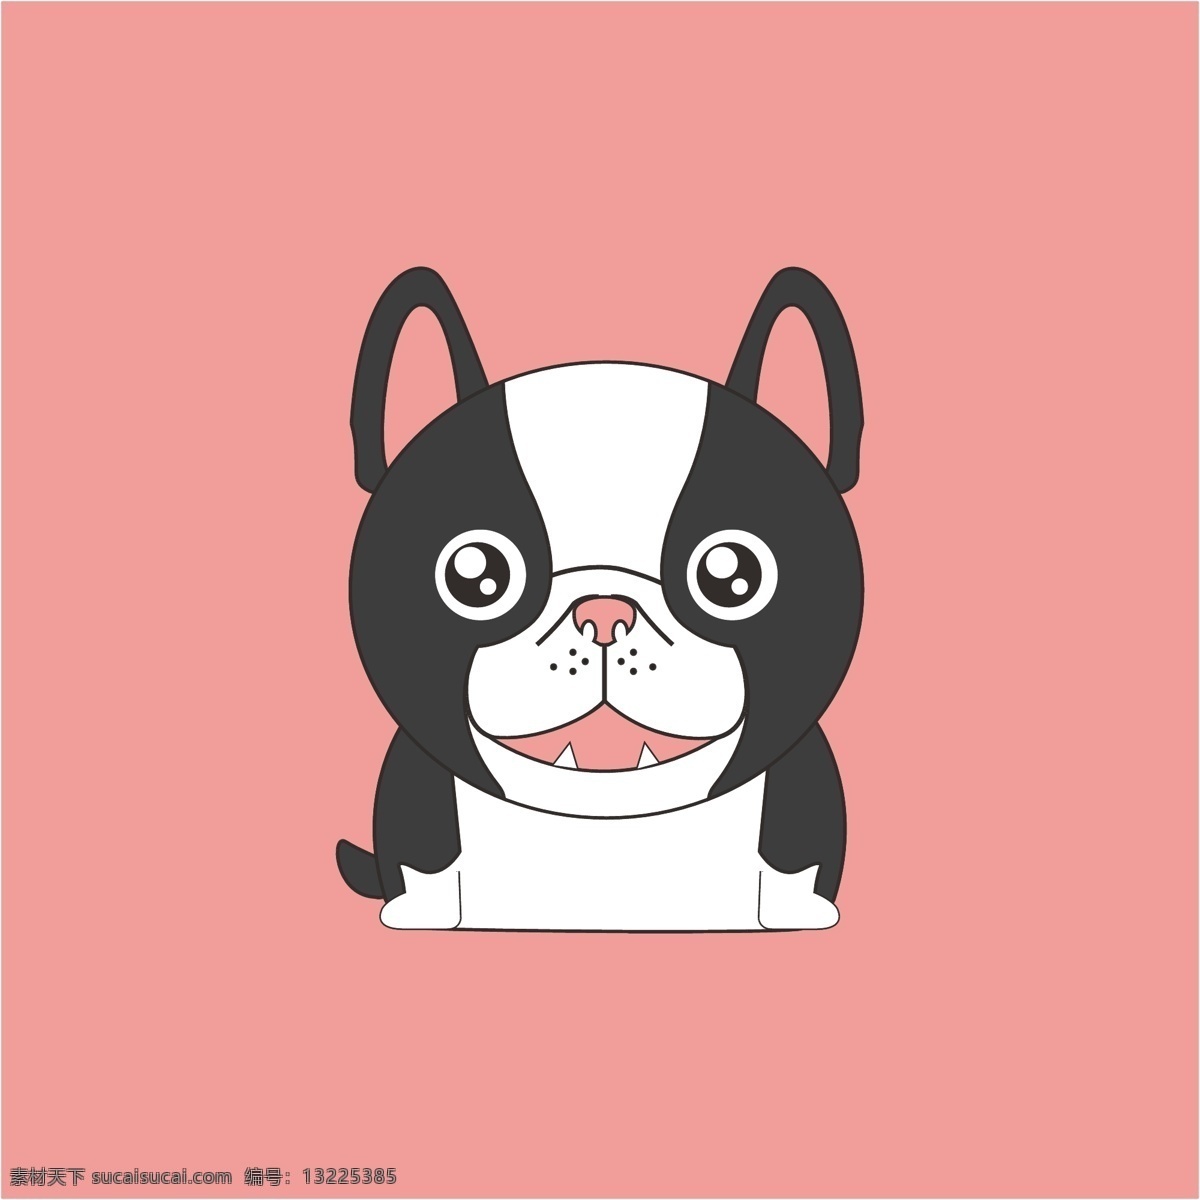 斗牛犬 动物 狗 宠物 卡通 可爱 矢量 简笔 卡通设计